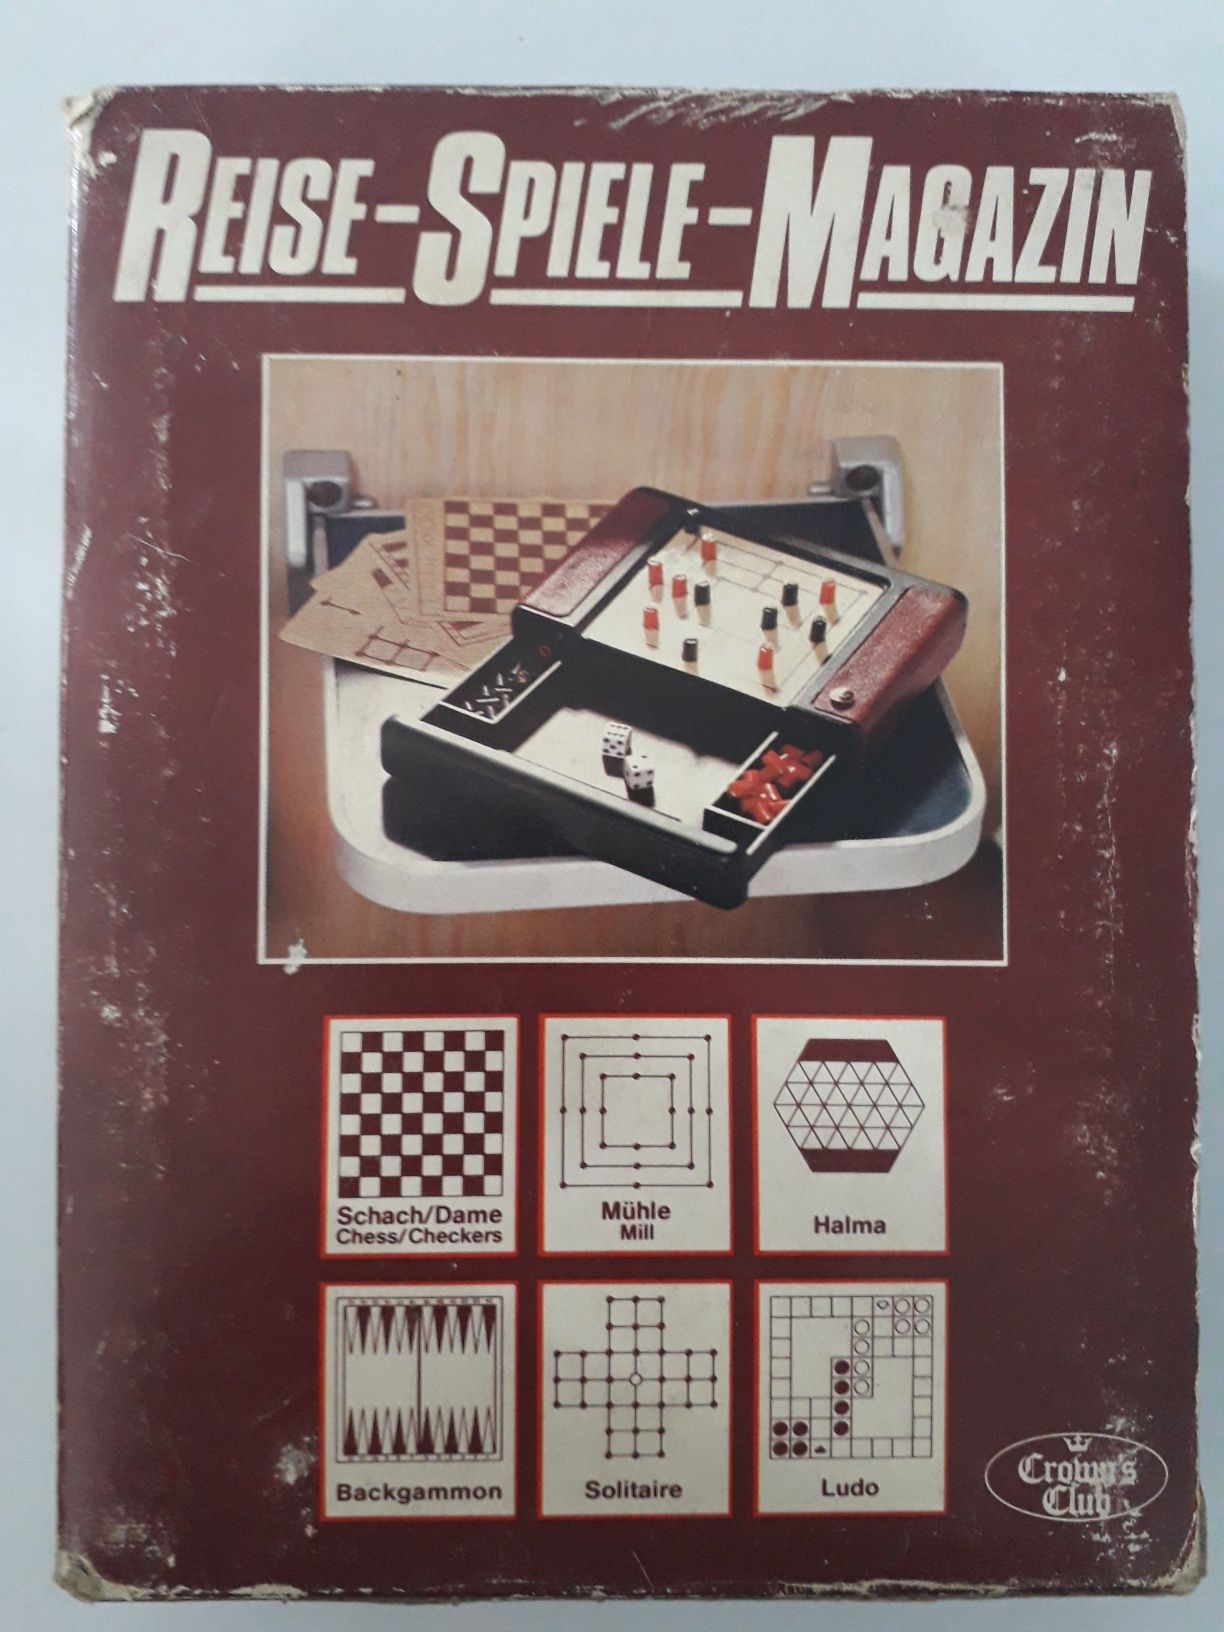 Jogo Vintage vários jogos Margaride (Santa Eulália), Várzea